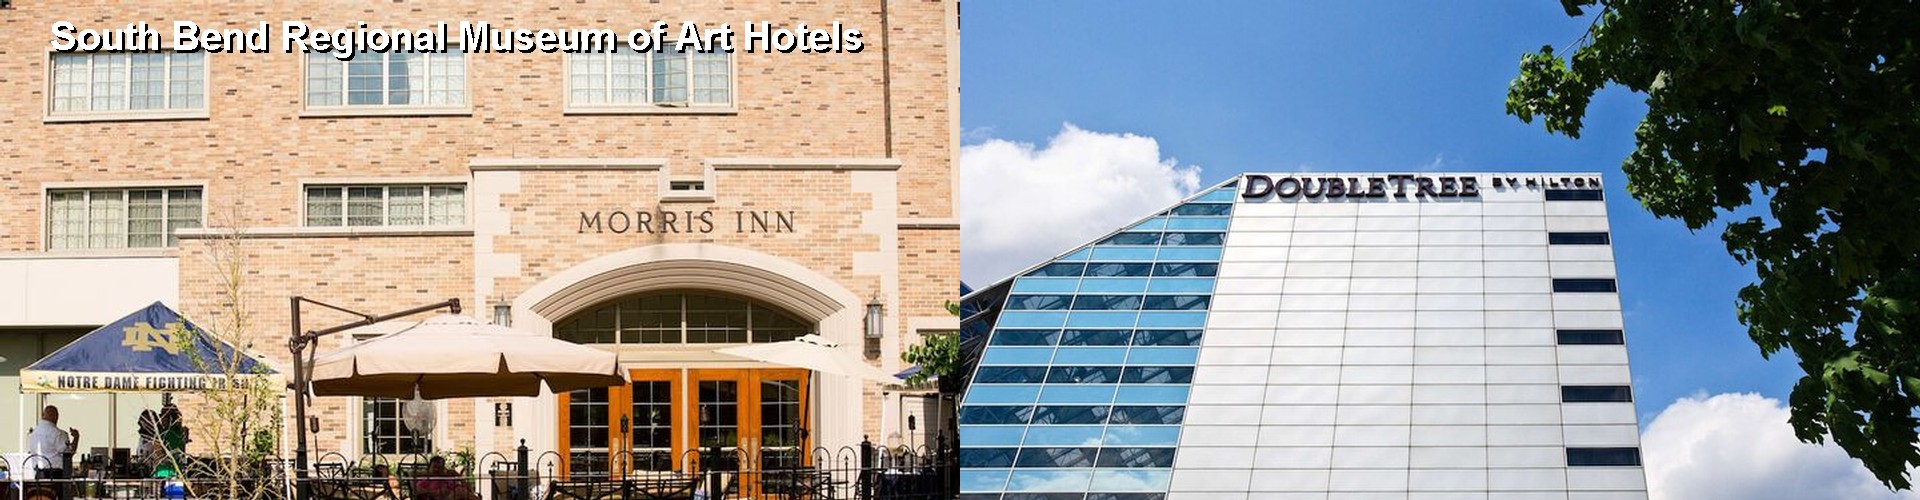 5 Best Hotels near South Bend Regional Museum of Art